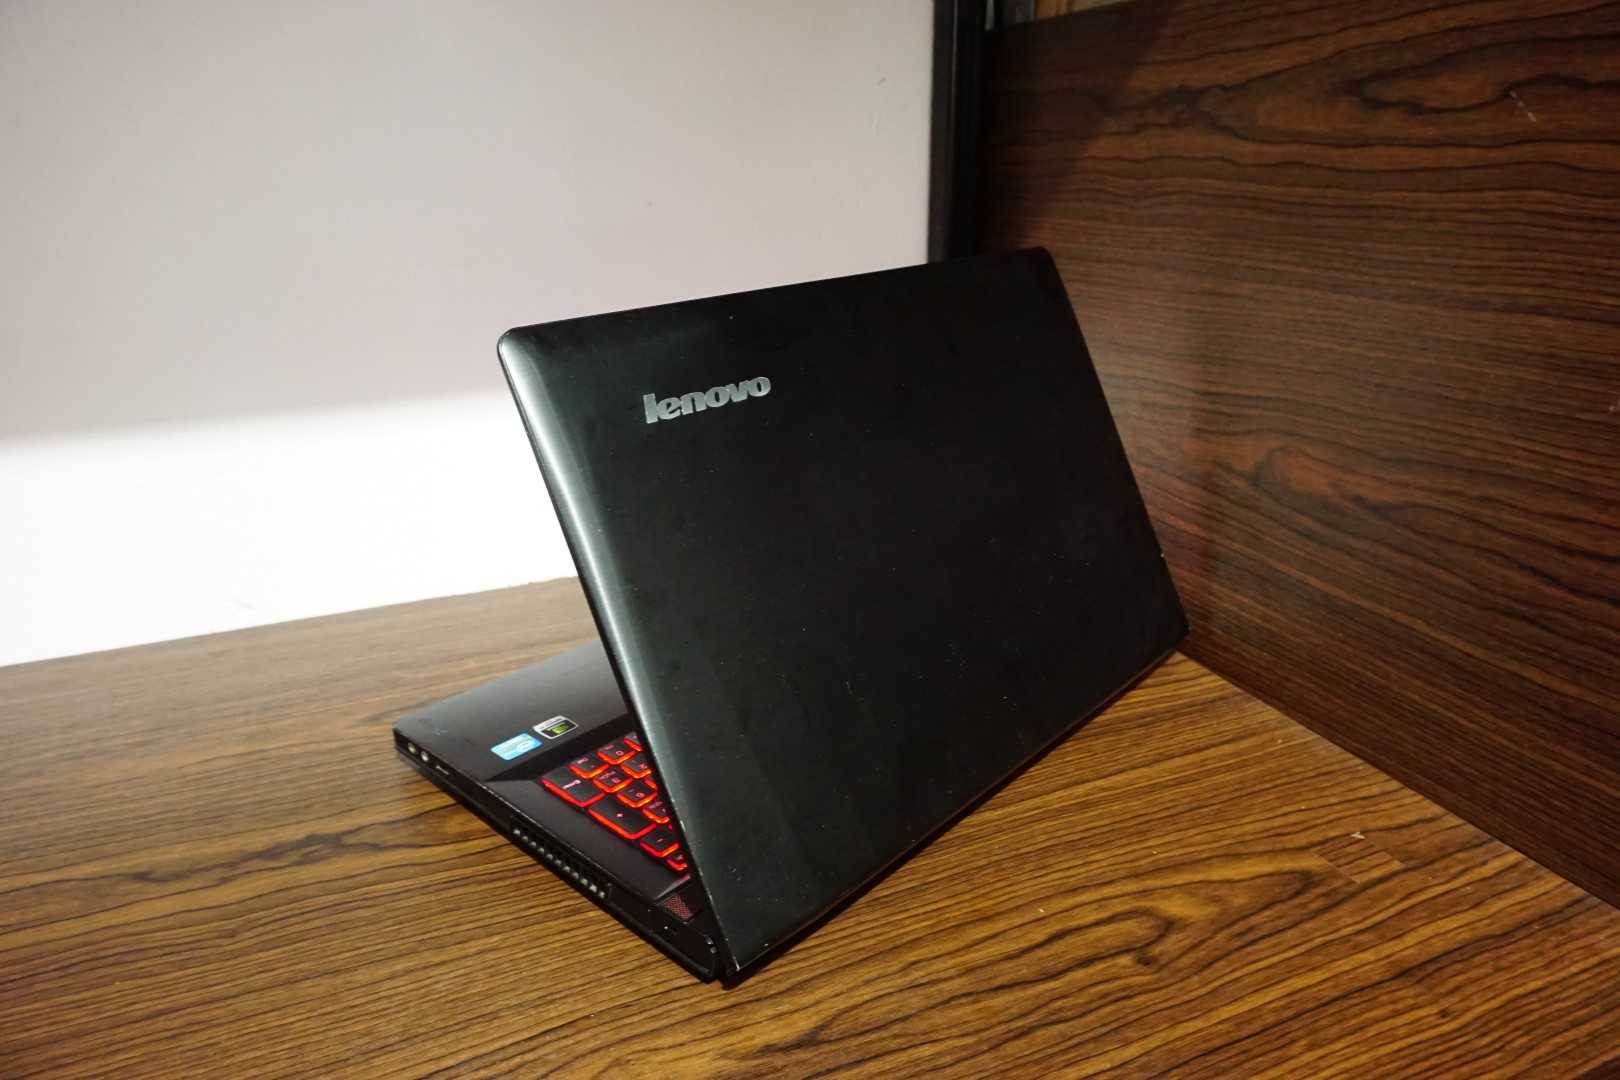 Ноутбук Lenovo IdeaPad P500 (B00DSPPJVY) - подробные характеристики обзоры видео фото Цены в интернет-магазинах где можно купить ноутбук Lenovo IdeaPad P500 (B00DSPPJVY)